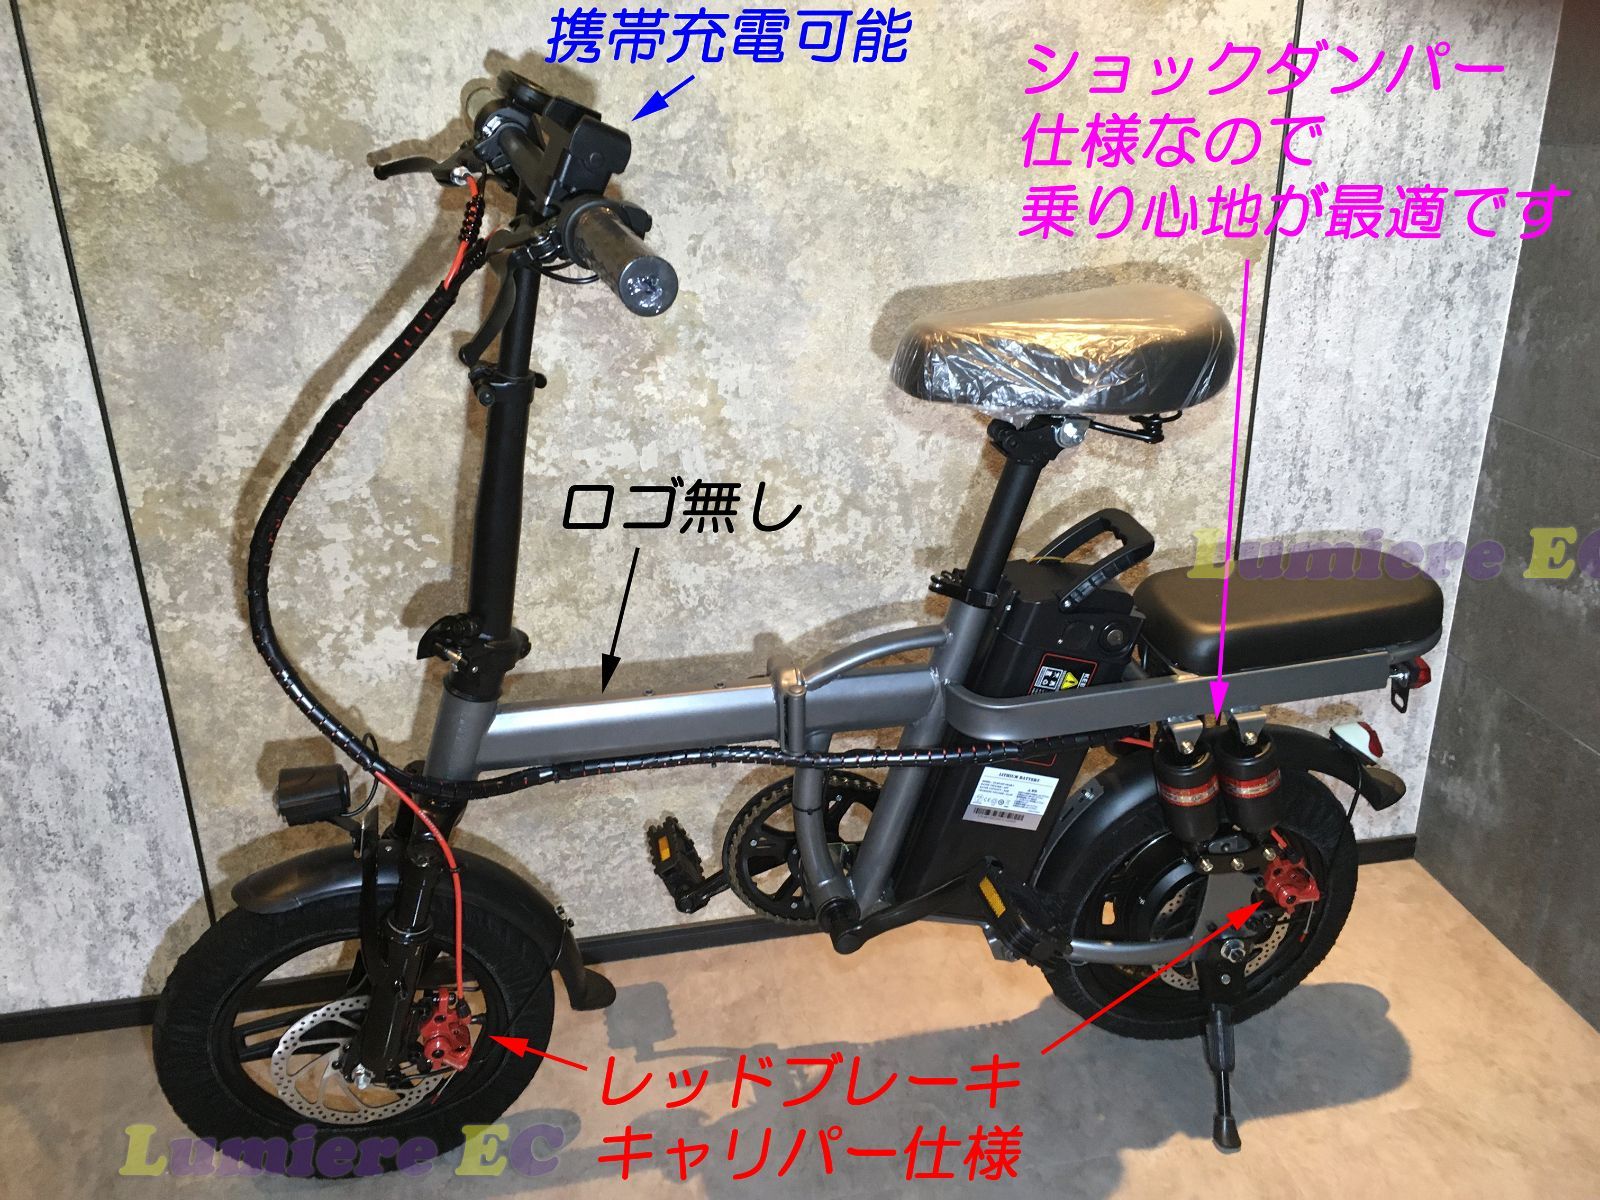 新品 大容量48v 20ahフル電動自転車用、モペット、ひねちゃ用バッテリー - 自転車本体